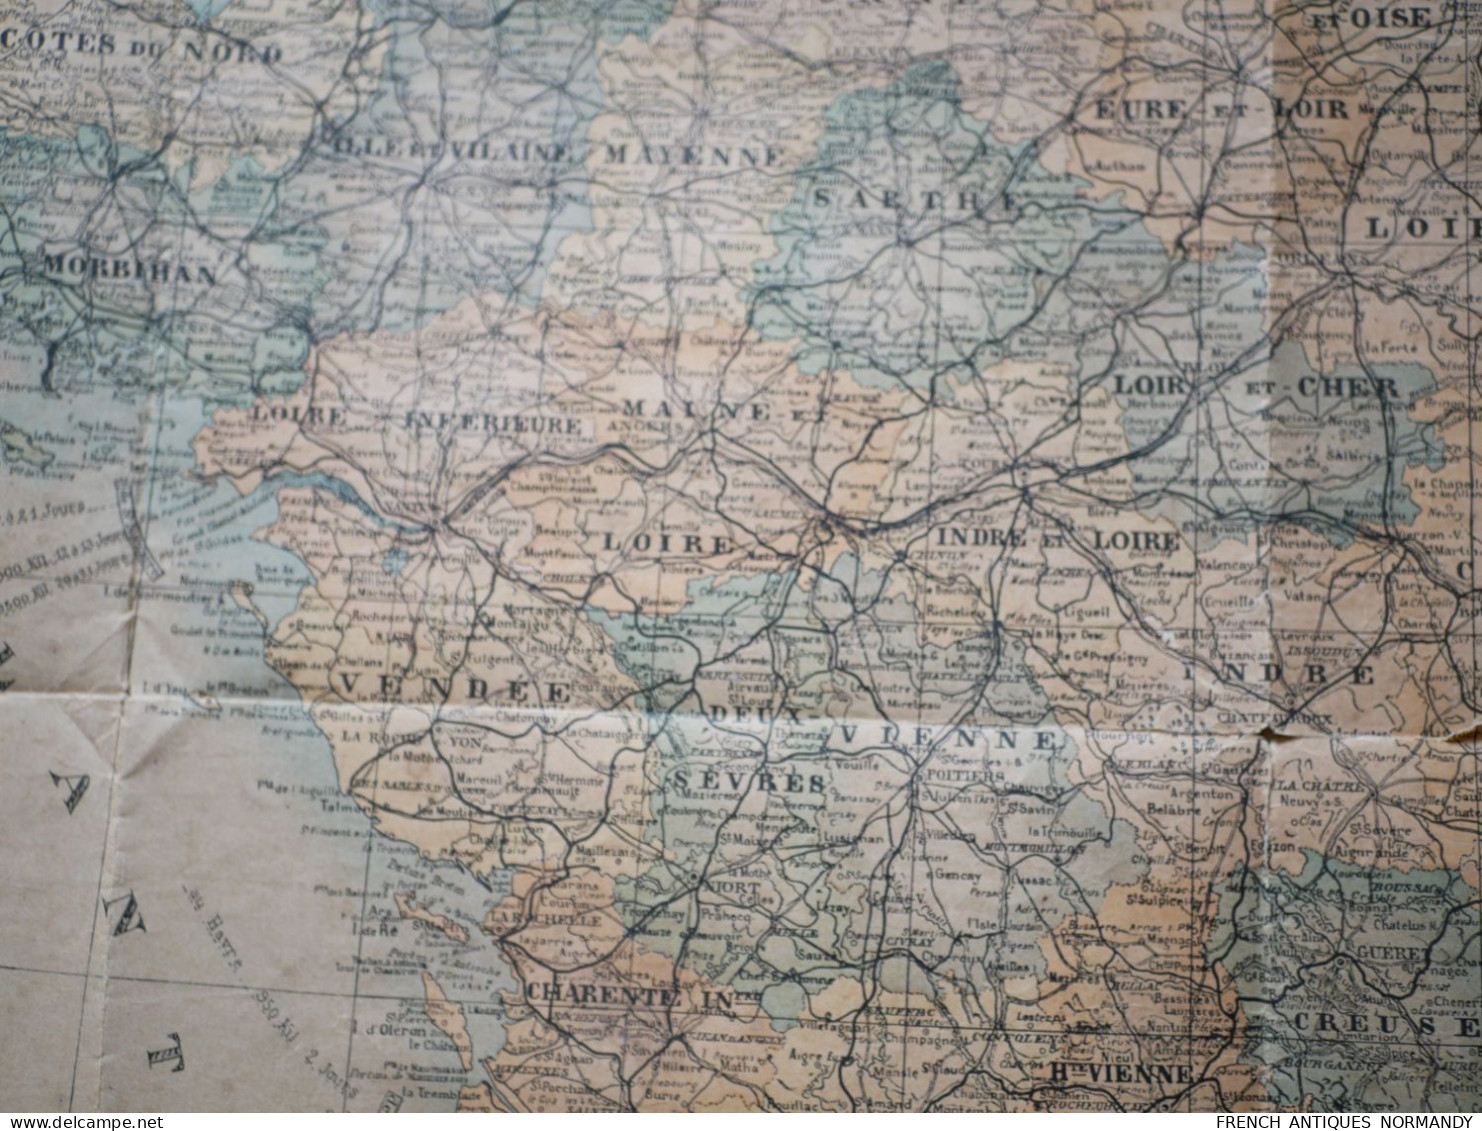 Carte de France Pierre RAOUL  Administrative et Commerciale entre deux guerres 1:1500000 avec les zones d'occupation